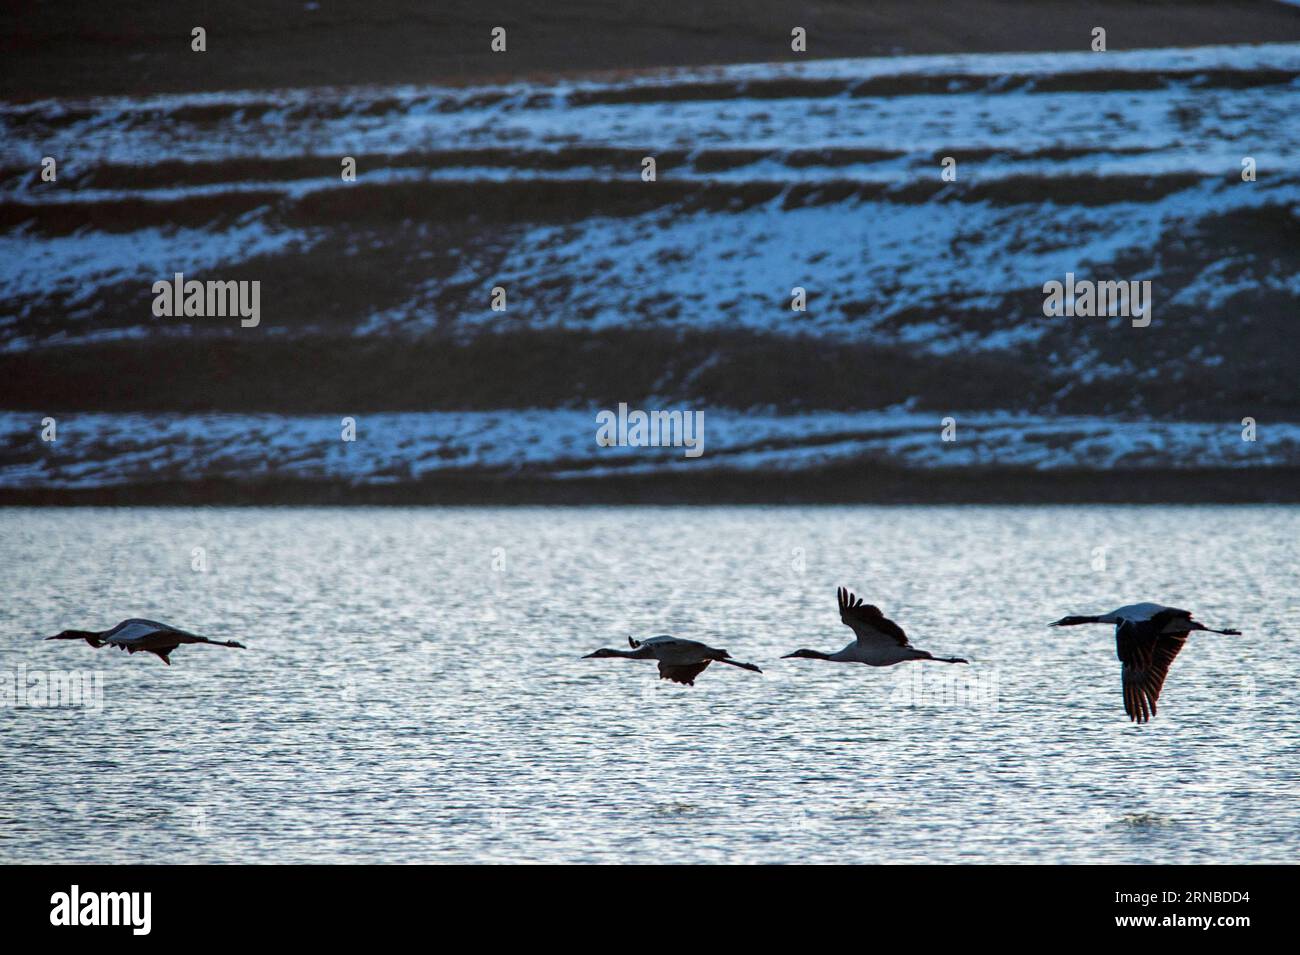 La photo prise le 28 février 2016 montre des grues à cou noir volant dans la réserve naturelle de grues à cou noir de Dashanbao dans la ville de Zhaotong, dans la province du Yunnan, au sud-ouest de la Chine. Après avoir rendu les terres agricoles aux prairies et aux zones humides, la réserve naturelle de grues à cou noir de Dashanbao, qui a été construite en 2003, a vu le nombre de grues à cou noir qui hivernent ici passer de 300 à environ 1200 en 2015. (Zwx) CHINA-YUNNAN-DASHANBAO-GRUES À COU NOIR(CN) HuxChao PUBLICATIONxNOTxINxCHN la photo prise LE 28 2016 février montre des grues à cou noir volant DANS la réserve naturelle de grue à cou noir de Dashanbao à Zhao Tong Banque D'Images